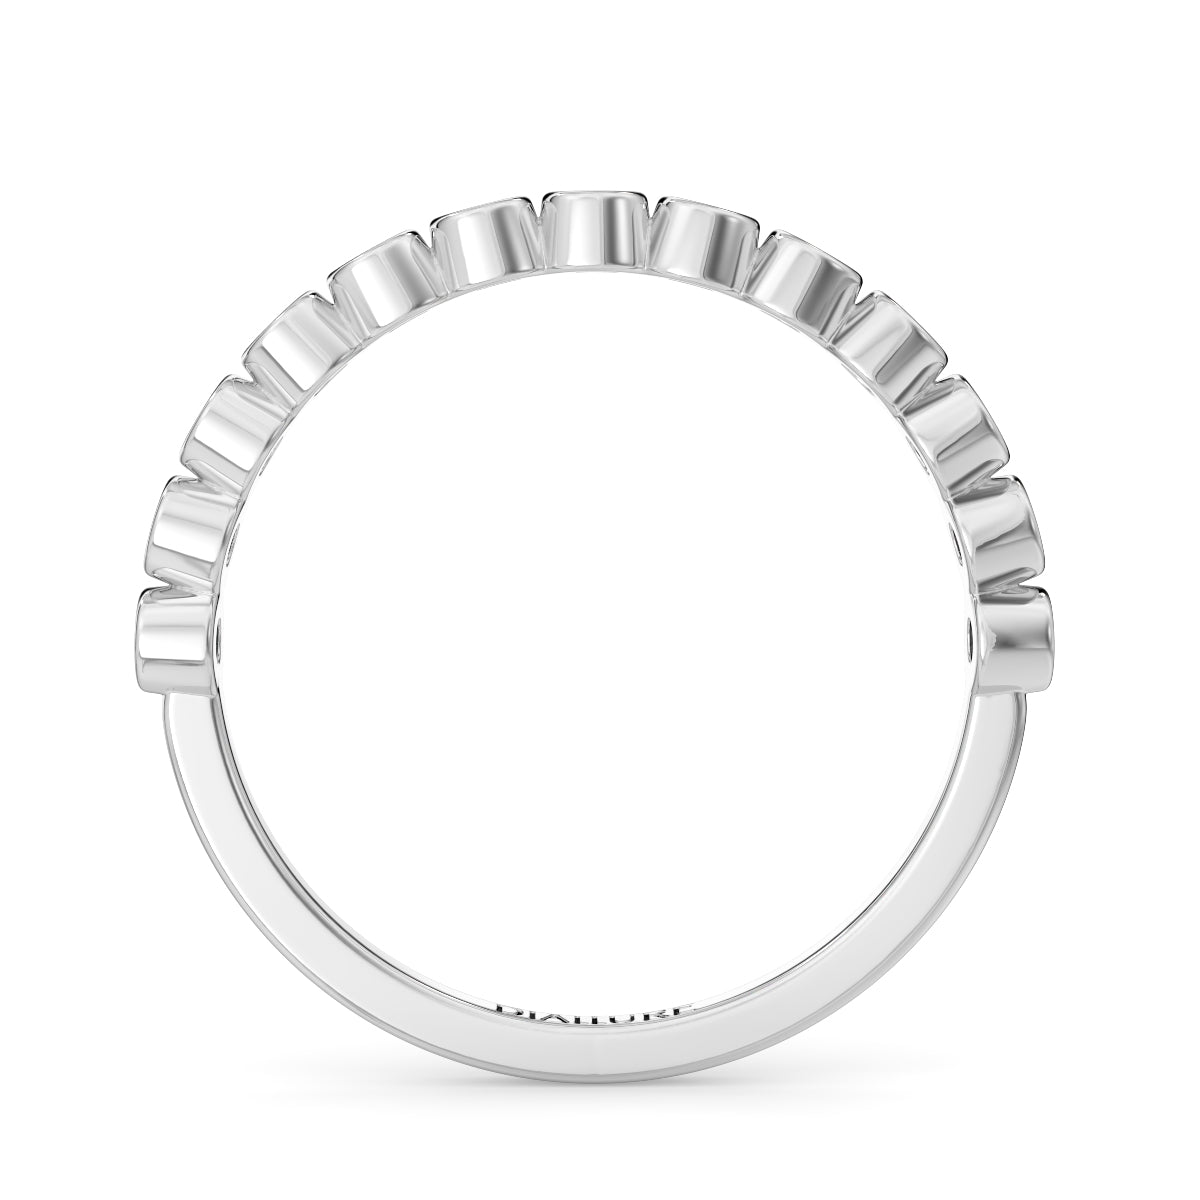 Mila 表圈戒指圆形明亮式切割钻石 0.18 克拉